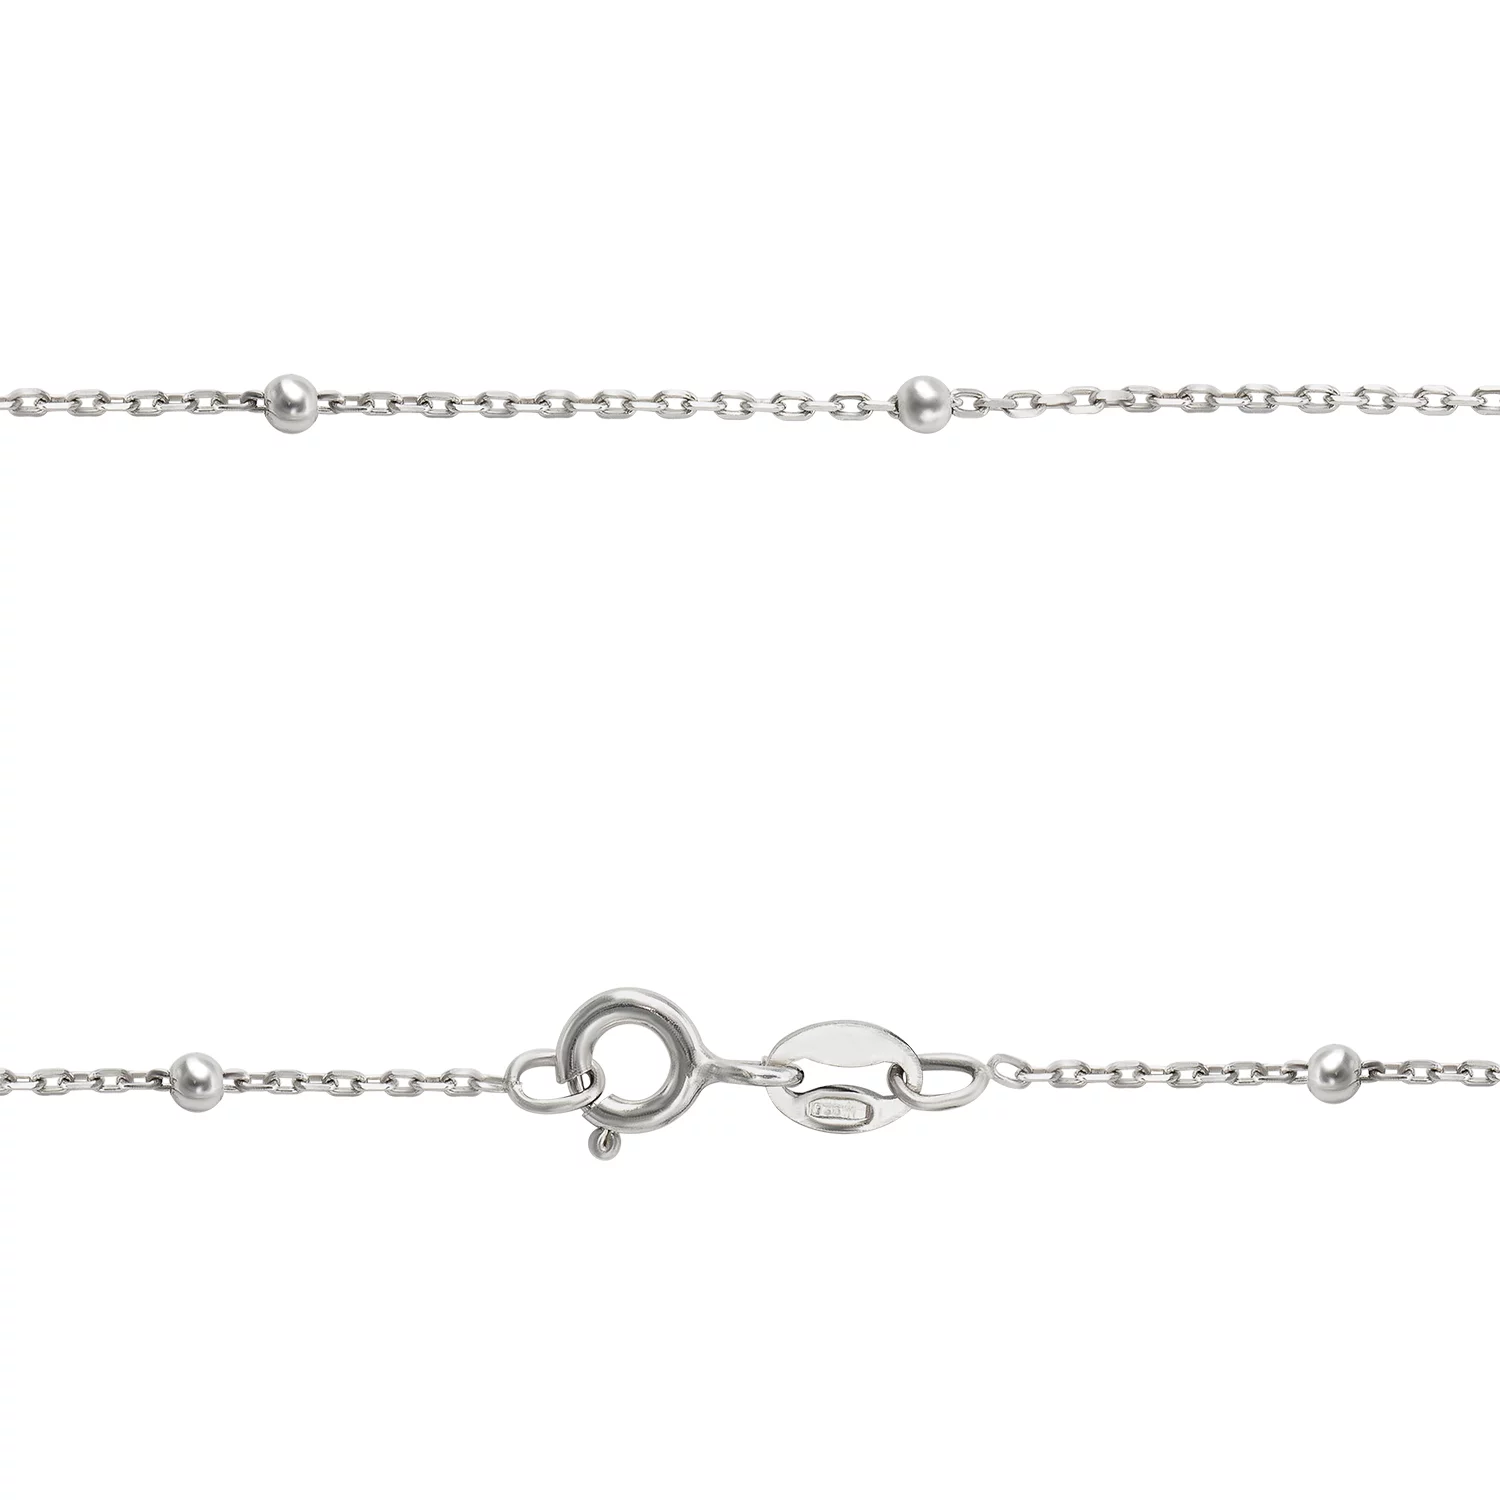 Серебряная цепочка с шариками плетением Якорь. Артикул 7508/226Р1/45: цена, отзывы, фото – купить в интернет-магазине AURUM